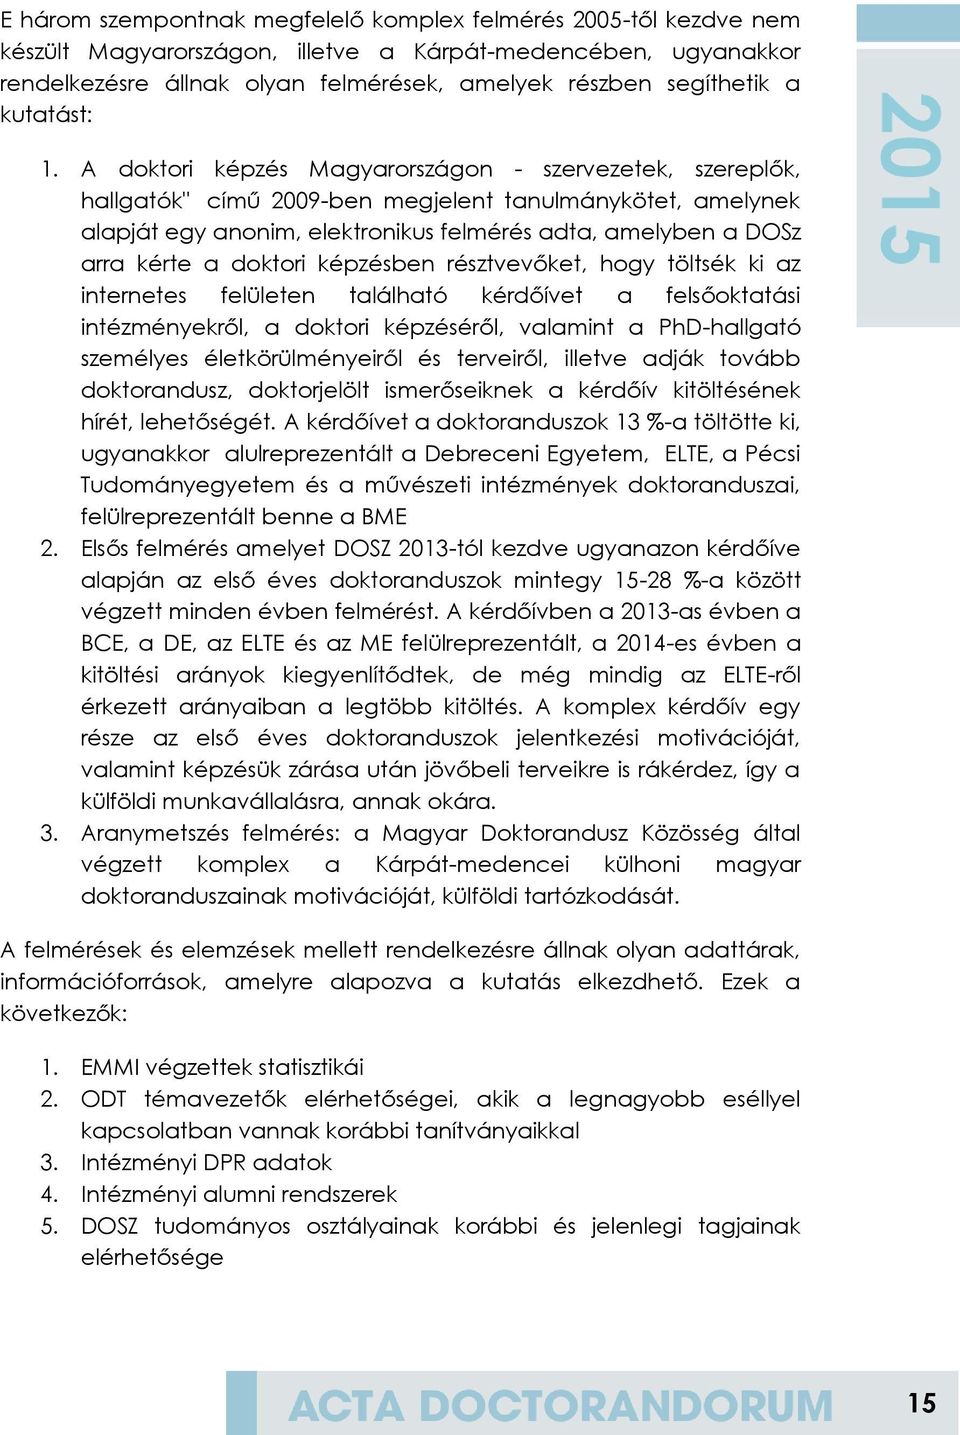 A doktori képzés Magyarországon - szervezetek, szereplők, hallgatók" című 2009-ben megjelent tanulmánykötet, amelynek alapját egy anonim, elektronikus felmérés adta, amelyben a DOSz arra kérte a